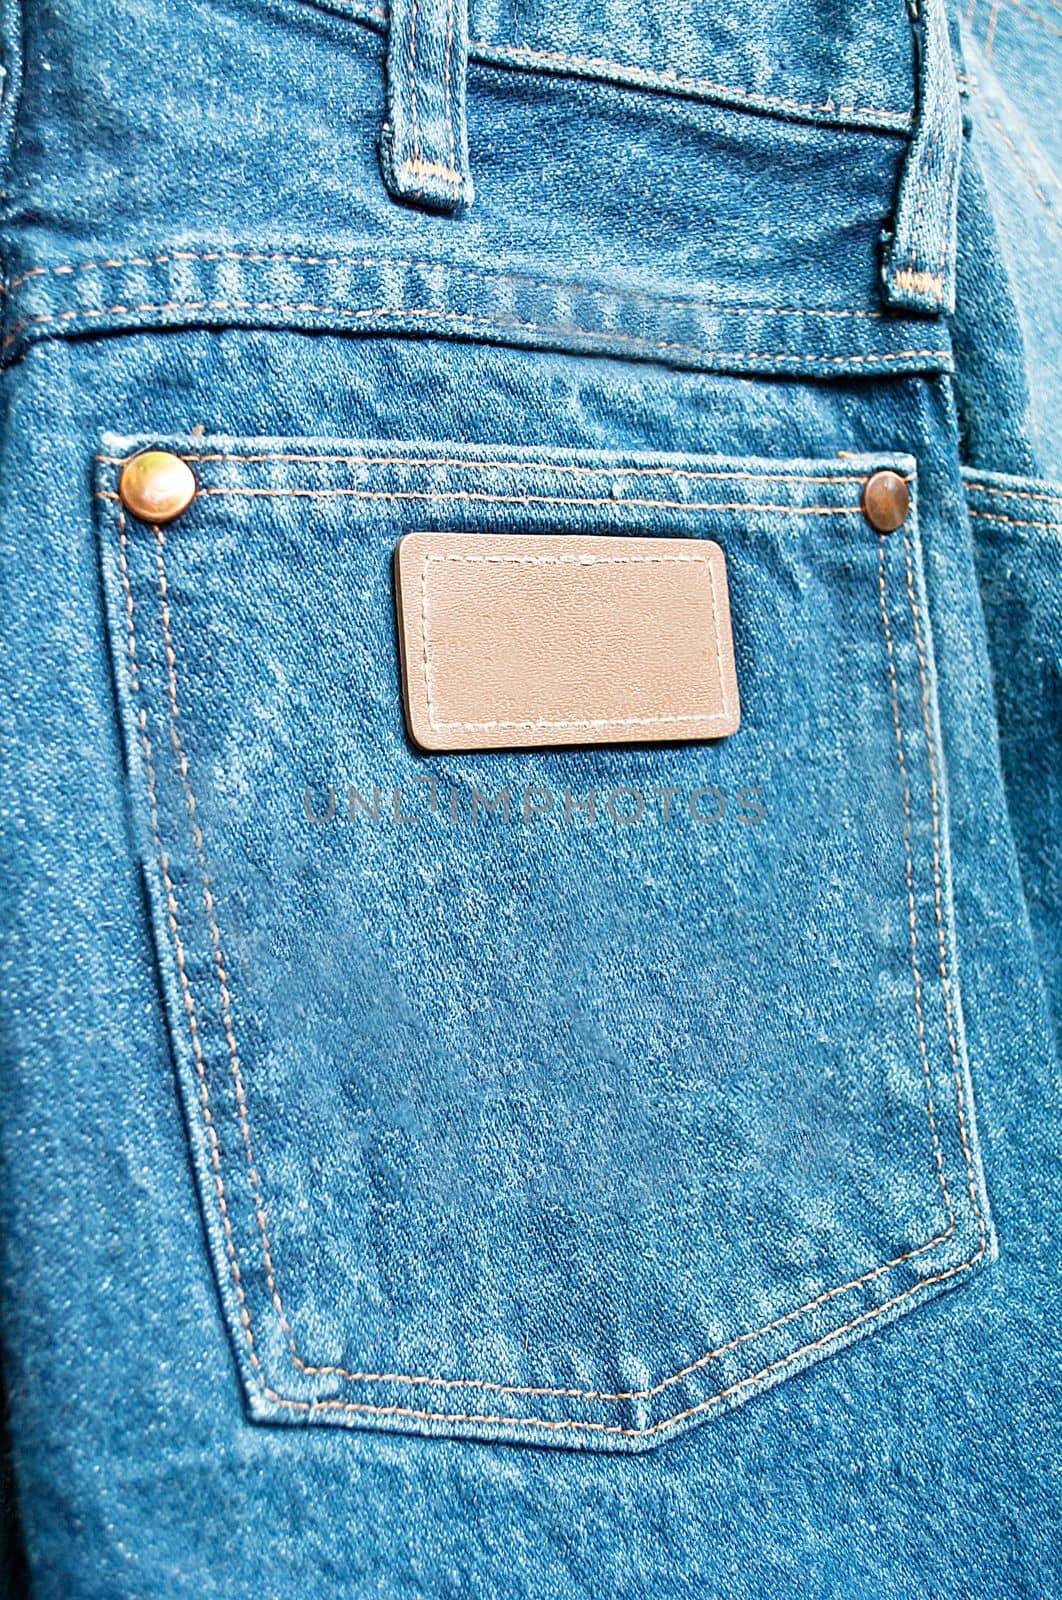 blue jeans pocket by rakoptonLPN